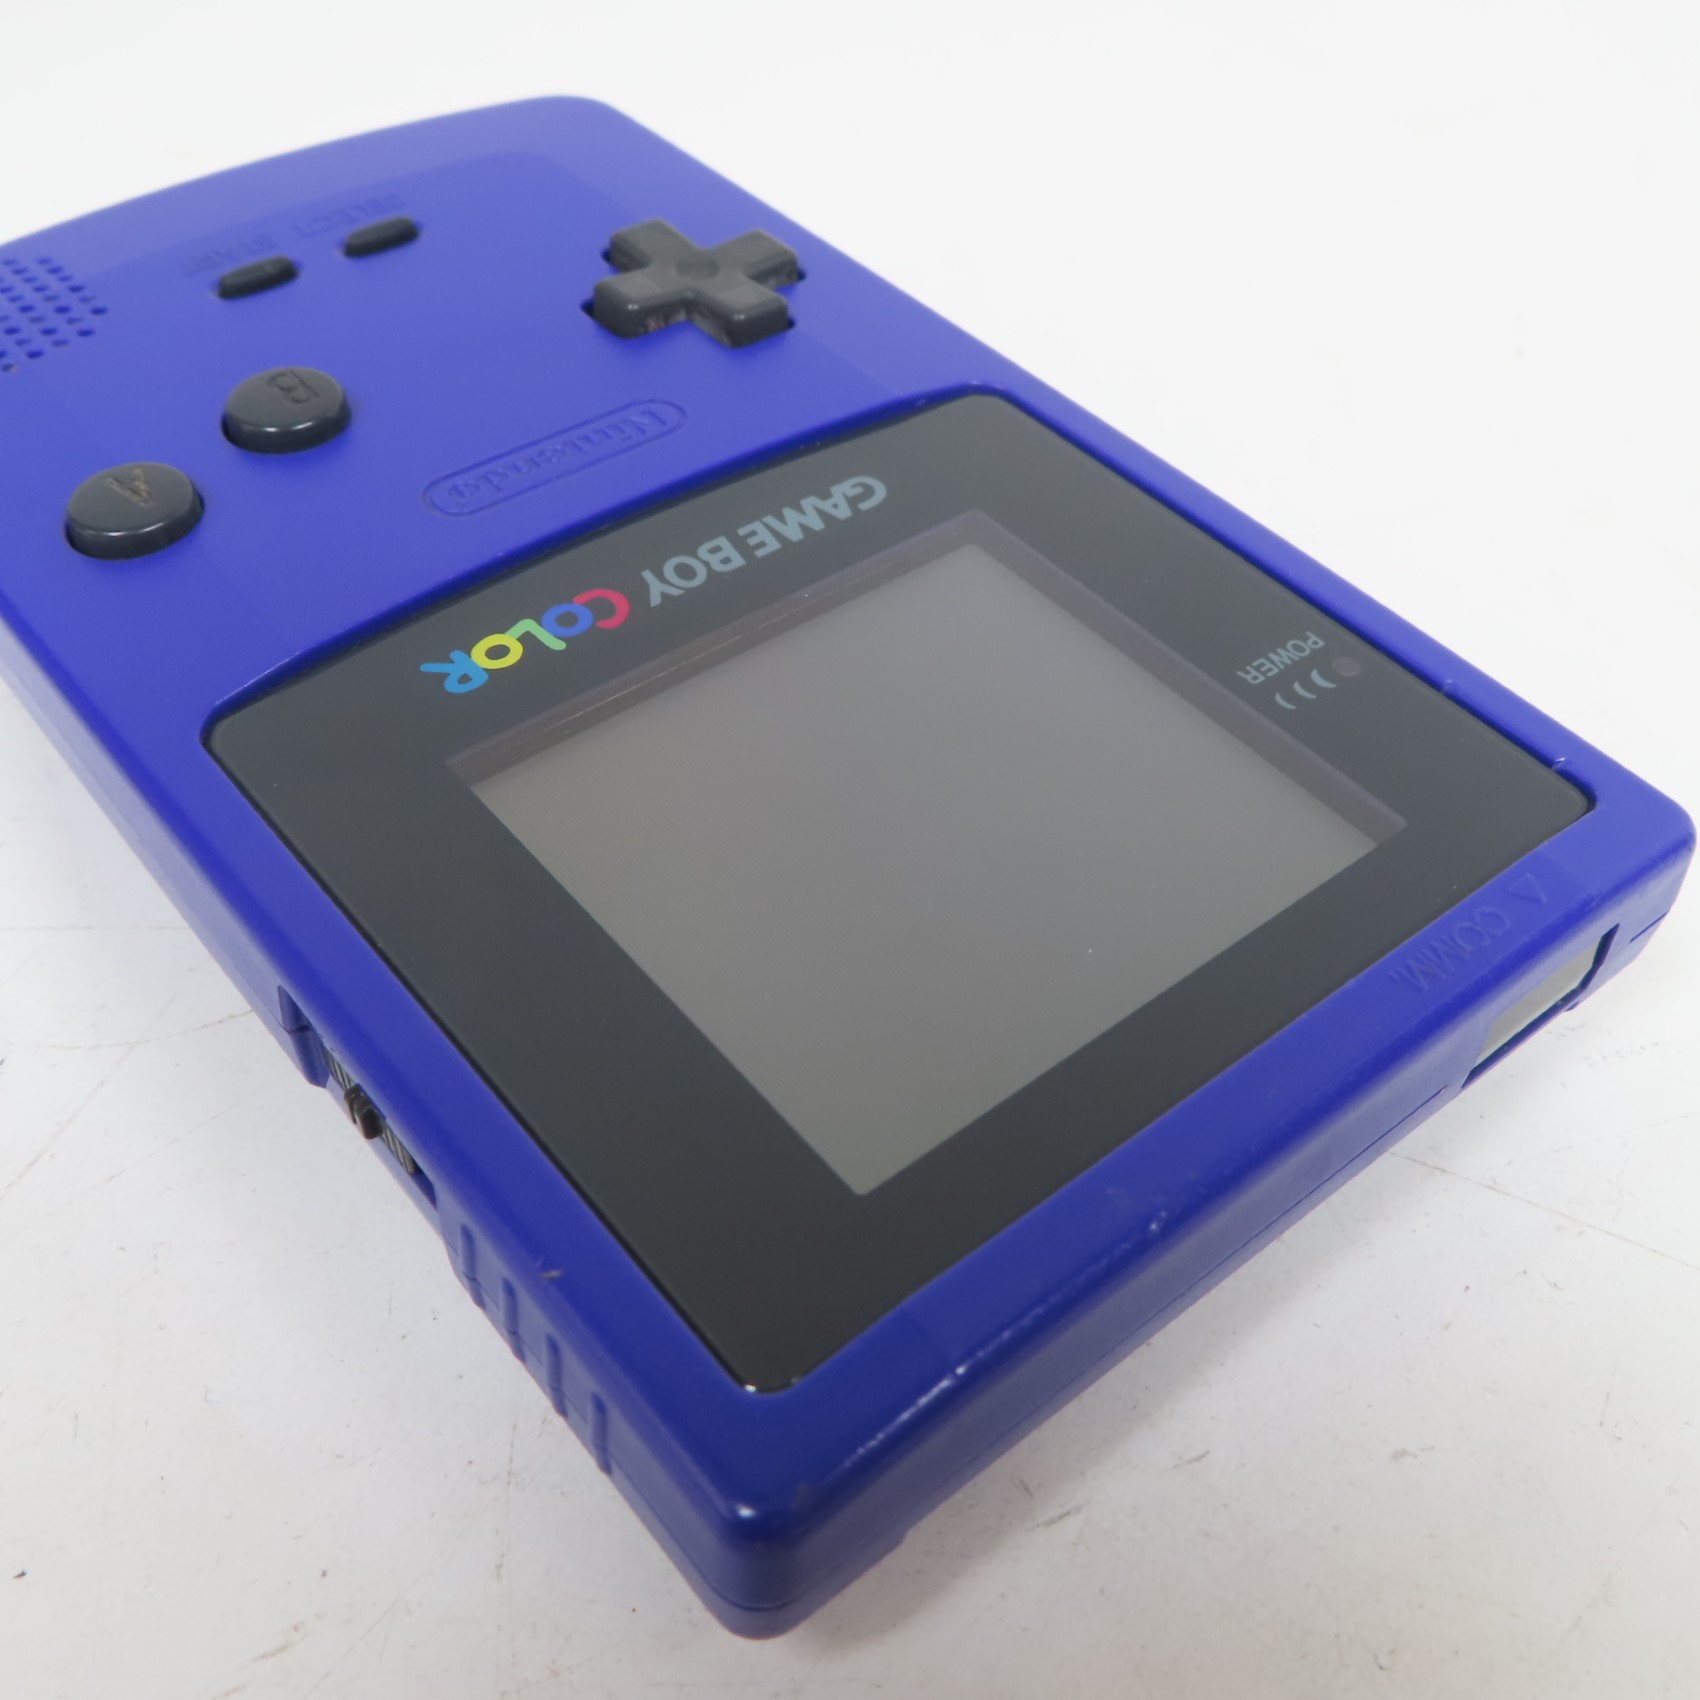 Nintendo Game Boy Color Pokémon Grape Console for sale online